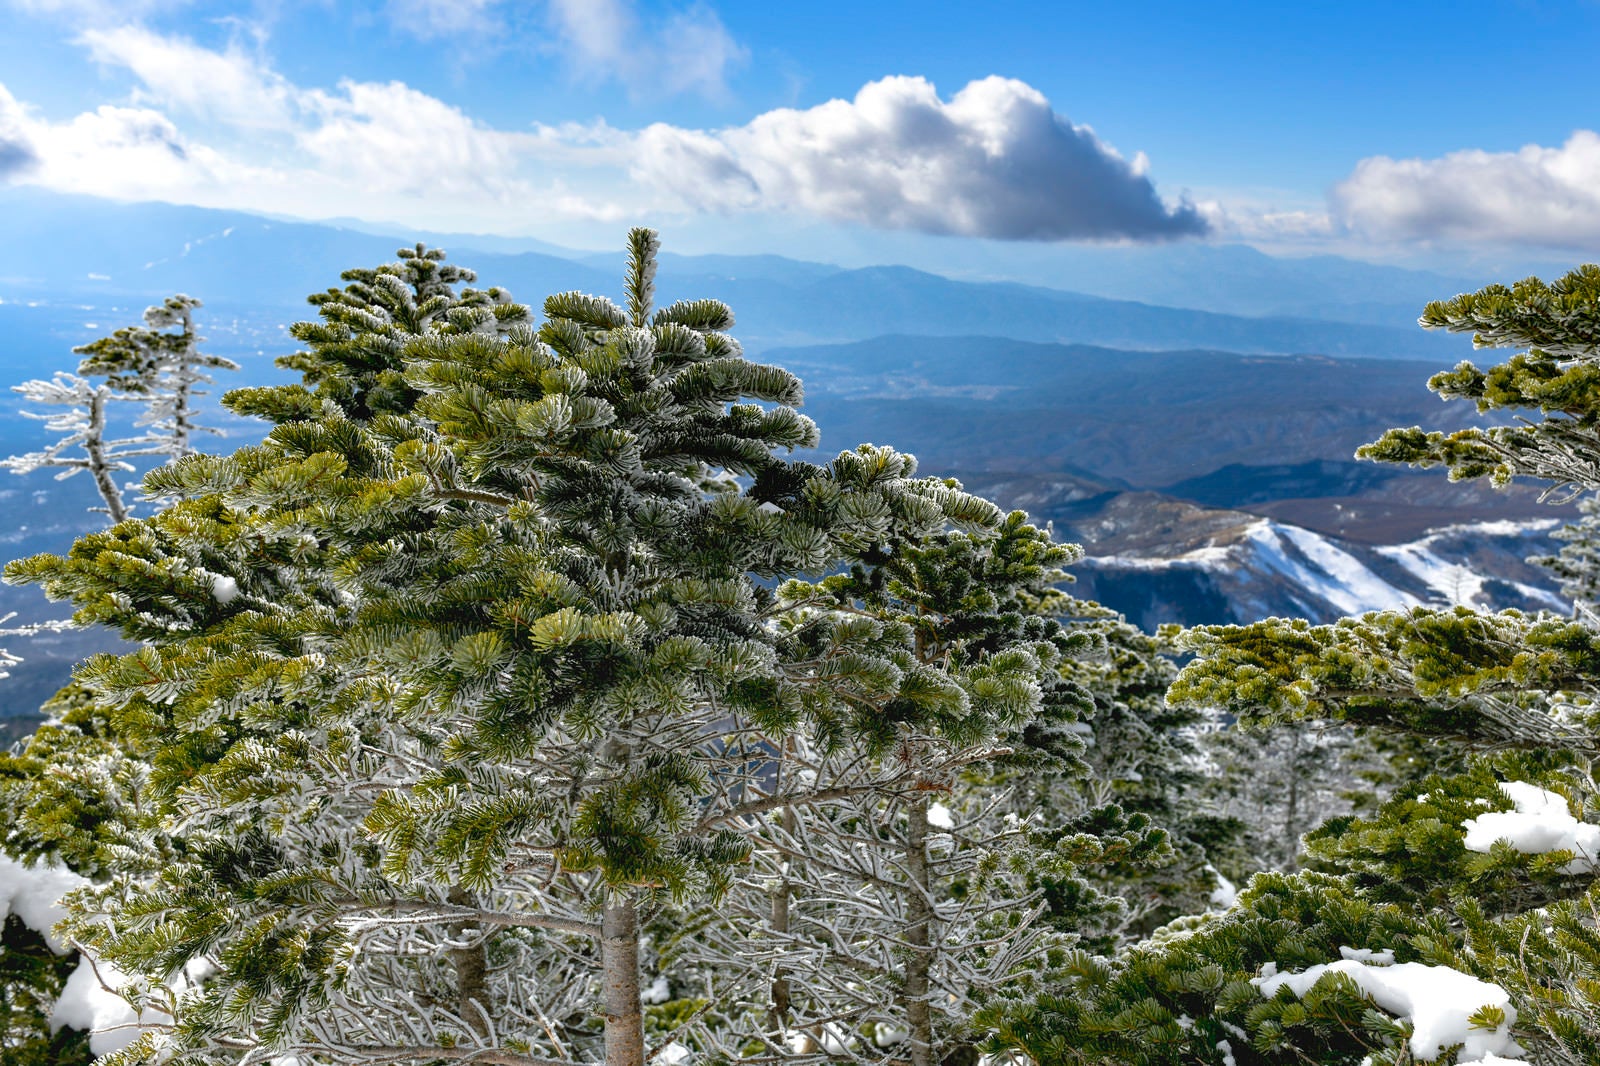 「霧氷になりかけた木々が連なる蓼科山（たてしなやま）」の写真